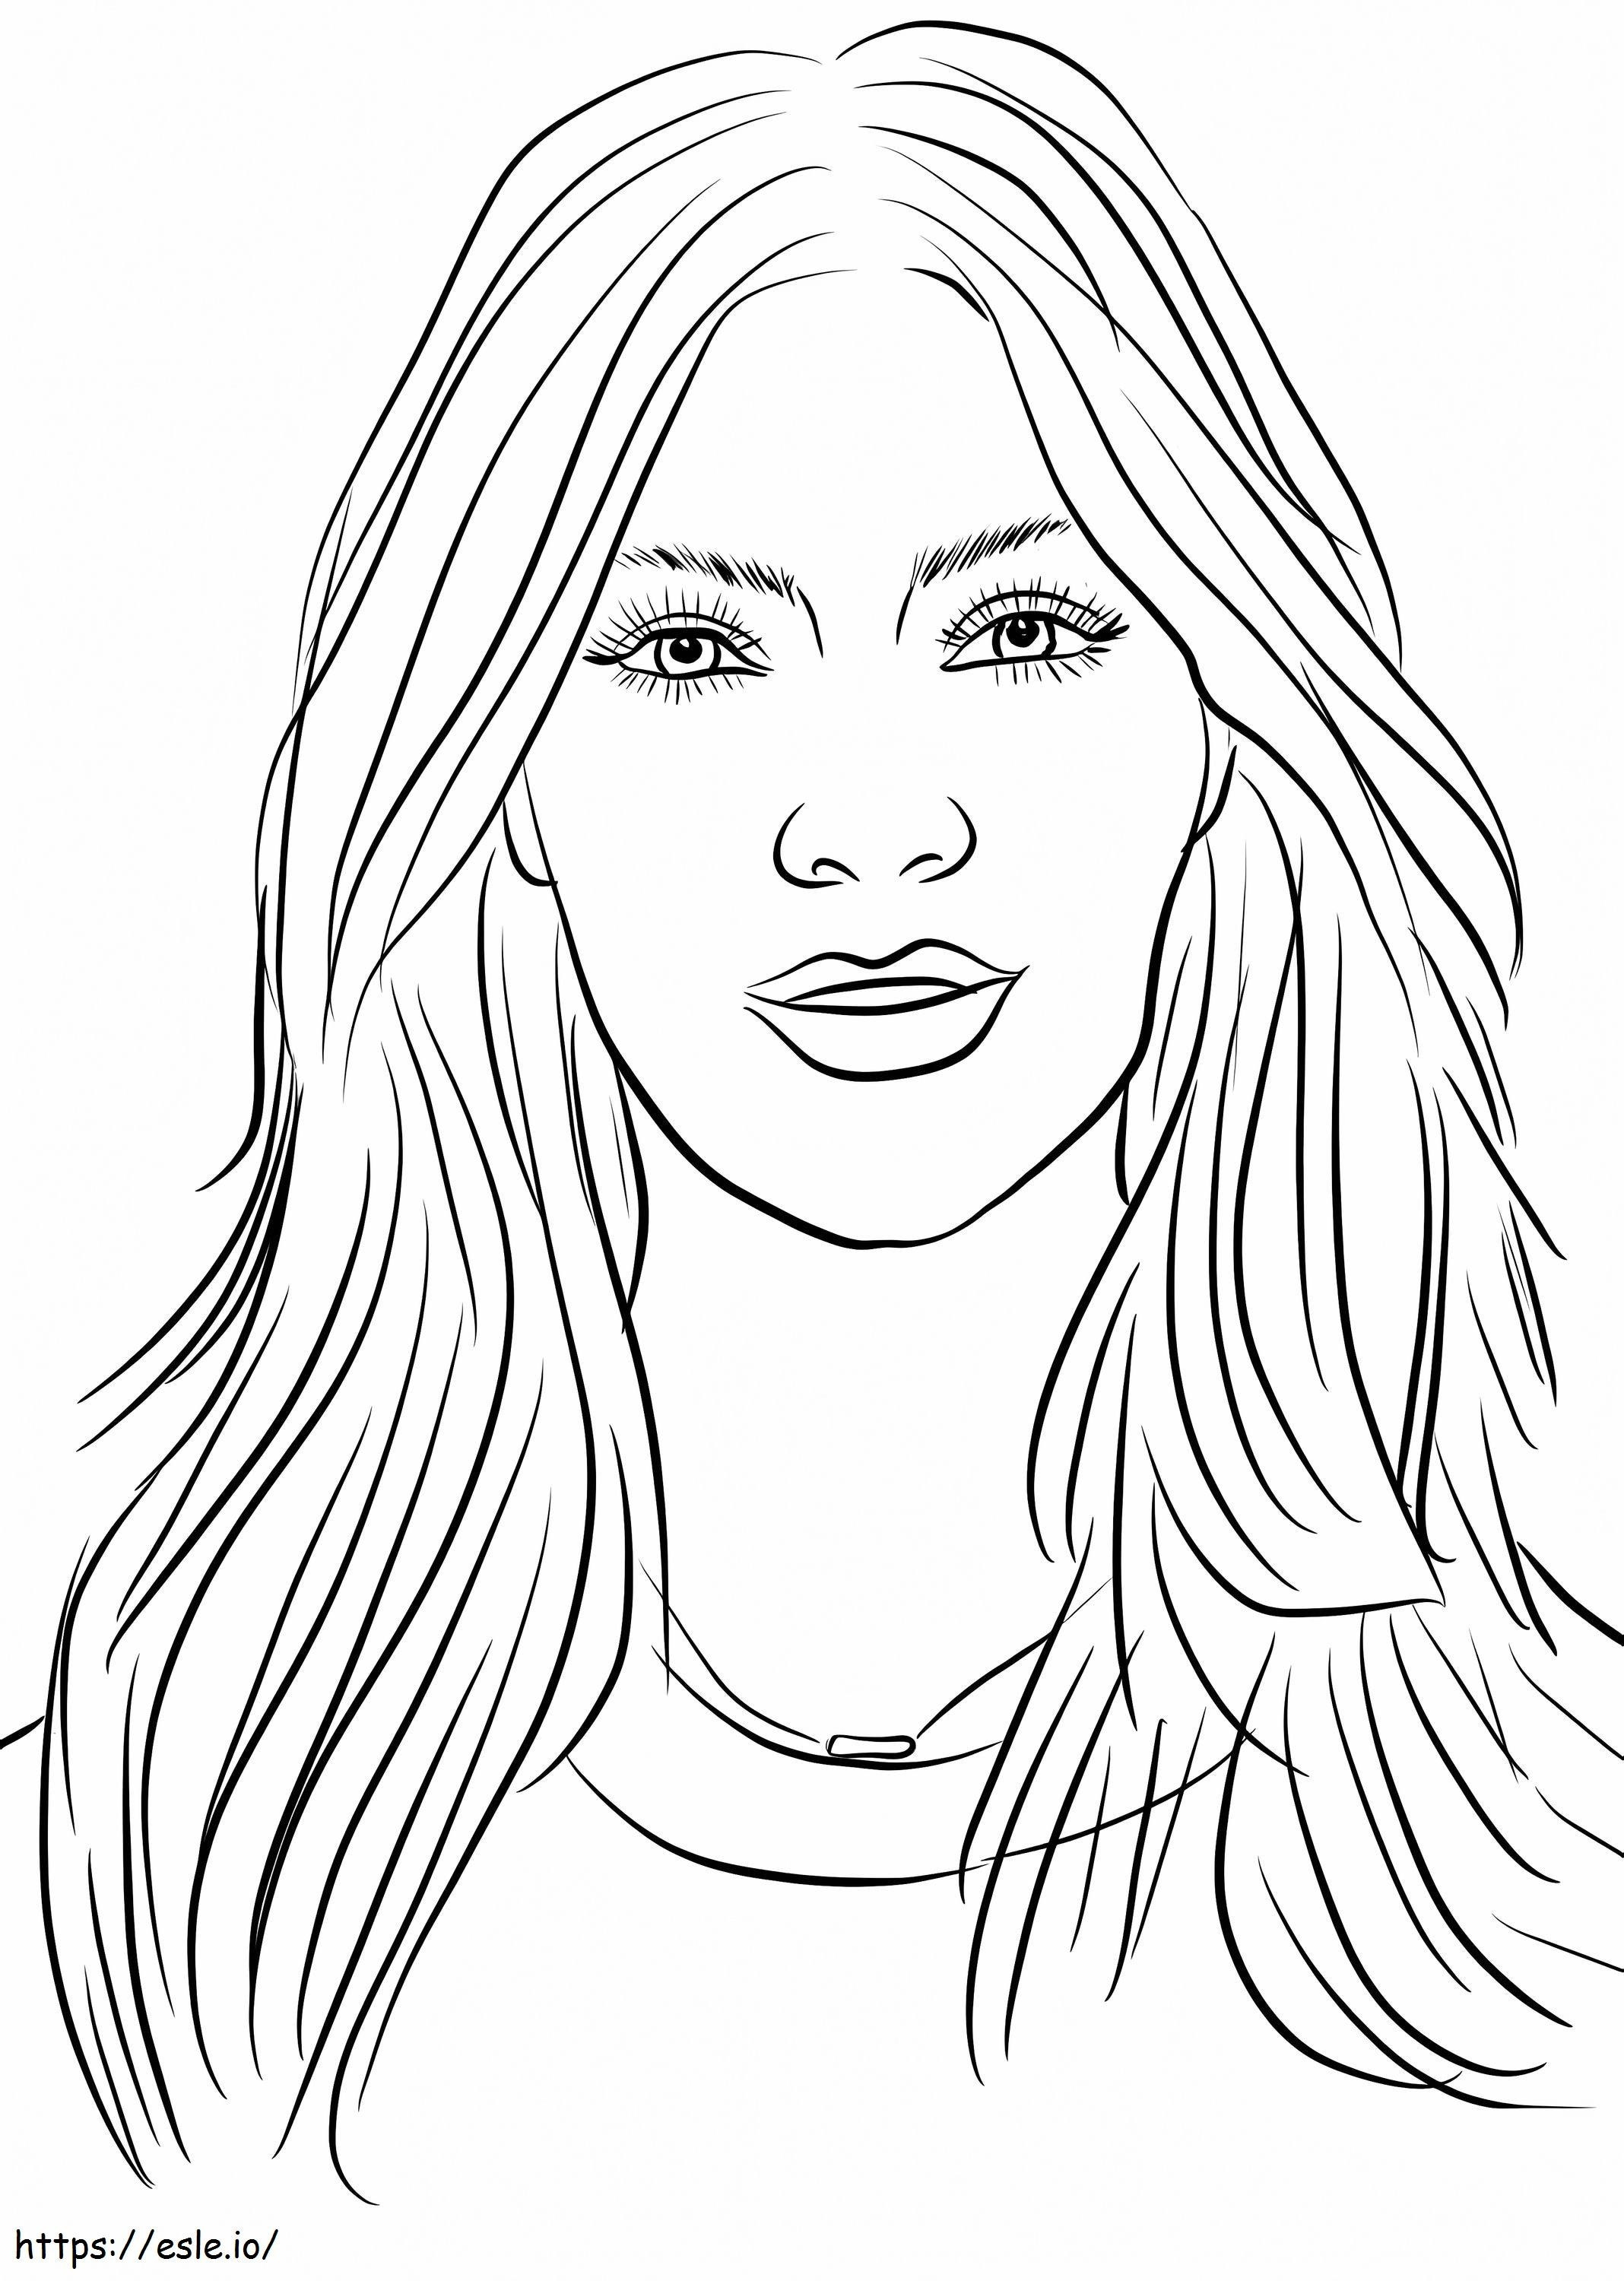 Pretty Kim Kardashian coloring page